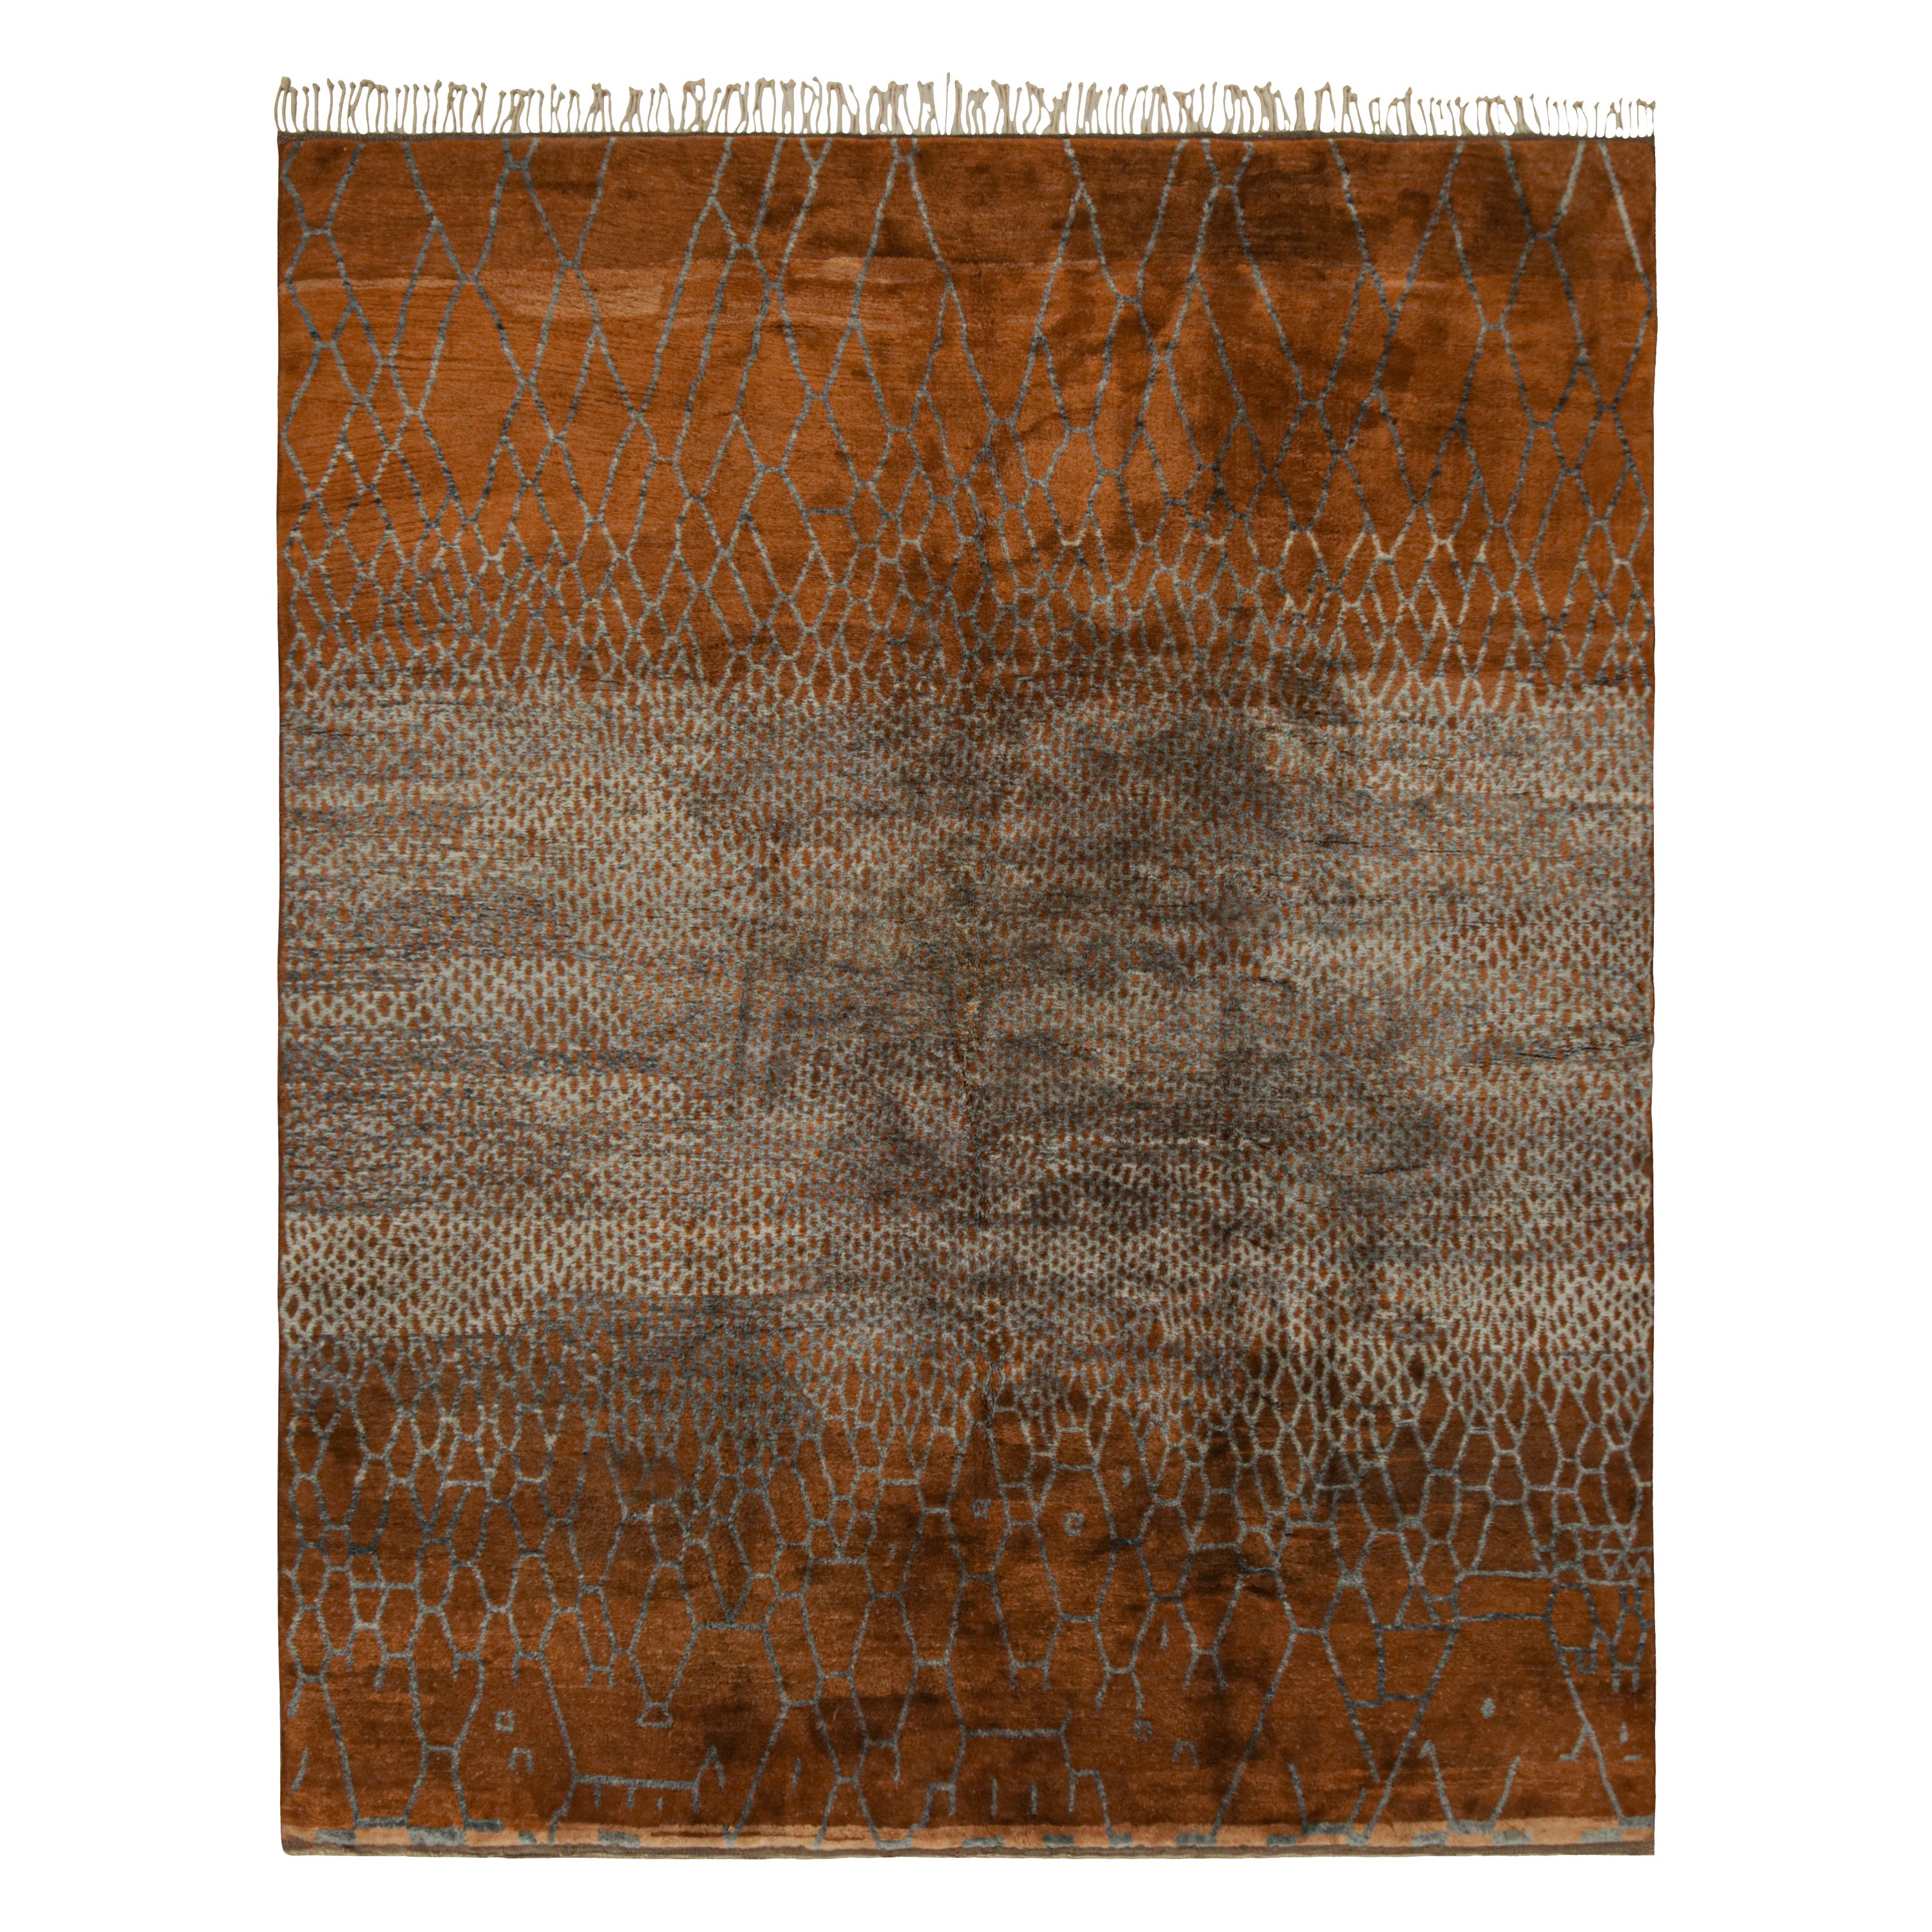 Marokkanischer Teppich von Rug & Kilim in Rosttönen mit silbergrauen geometrischen Mustern